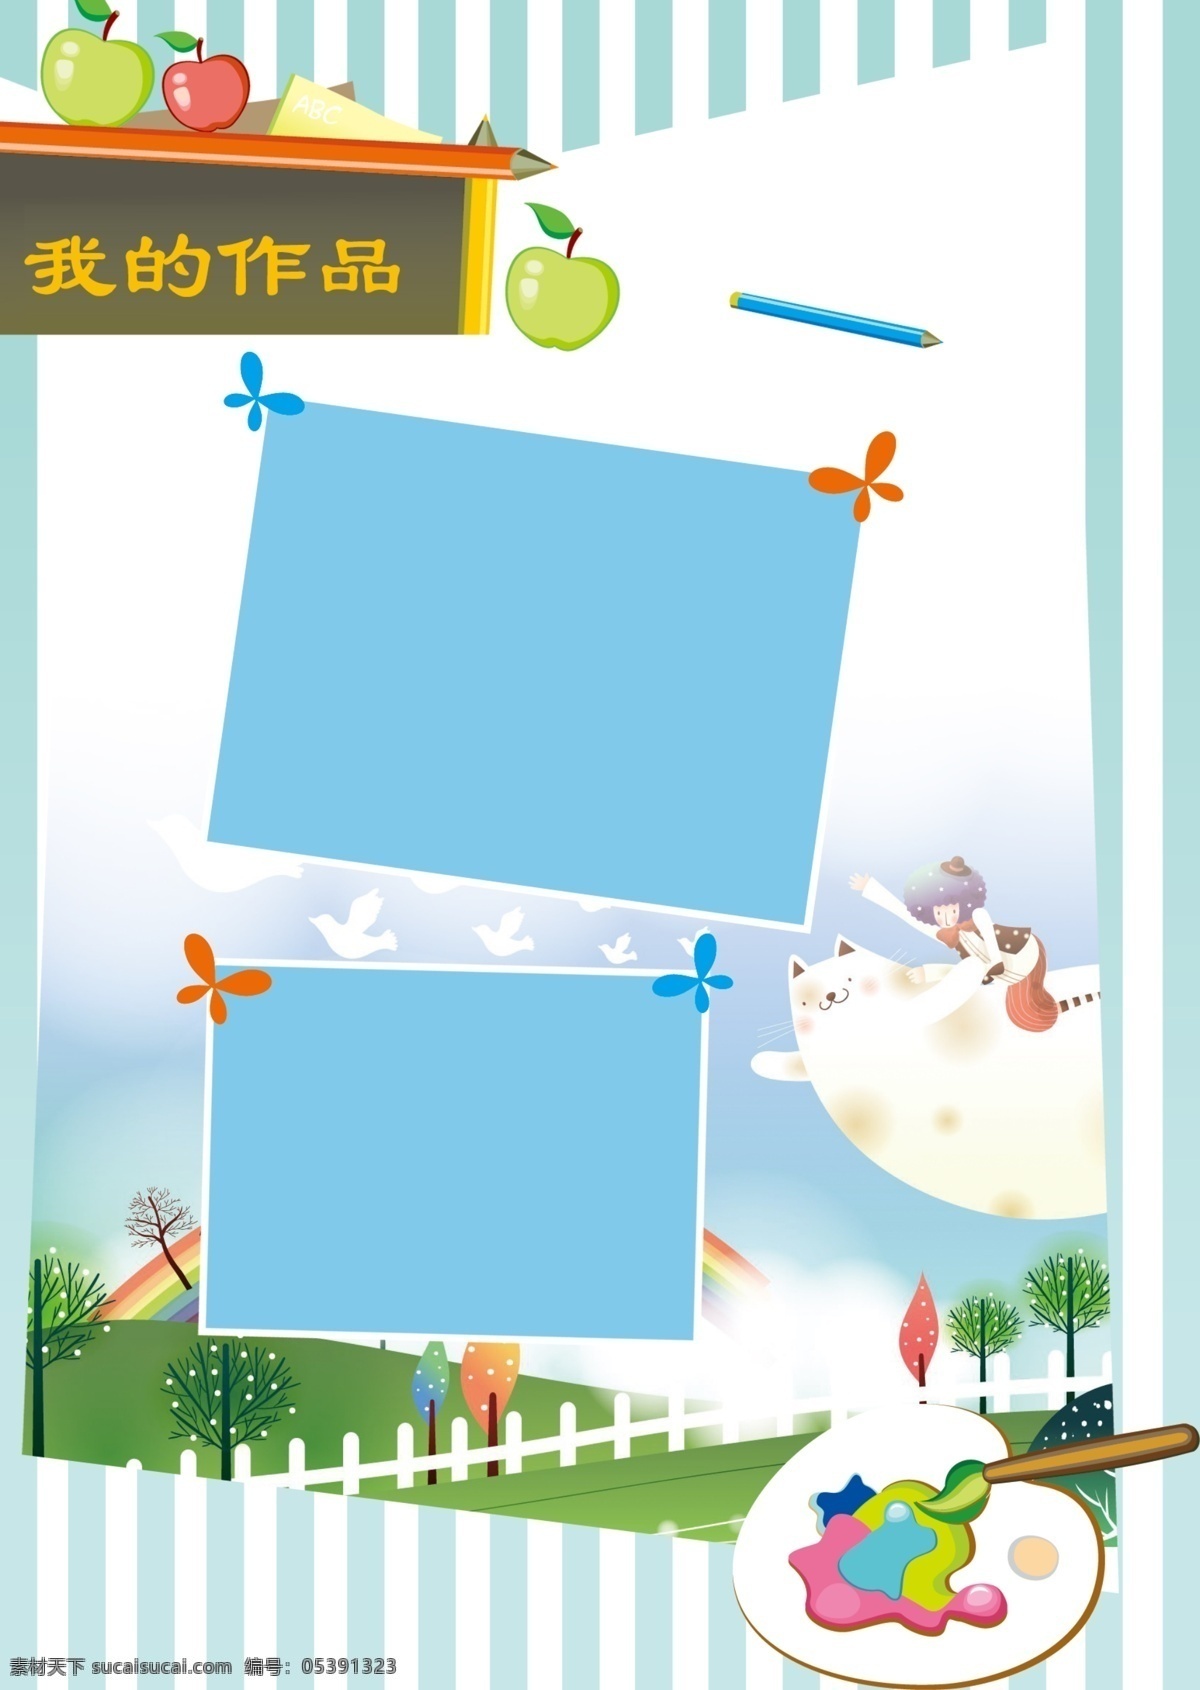 作品展示 苹果 铅笔 蝴蝶 小树 可爱背景图 展板模板 广告设计模板 源文件